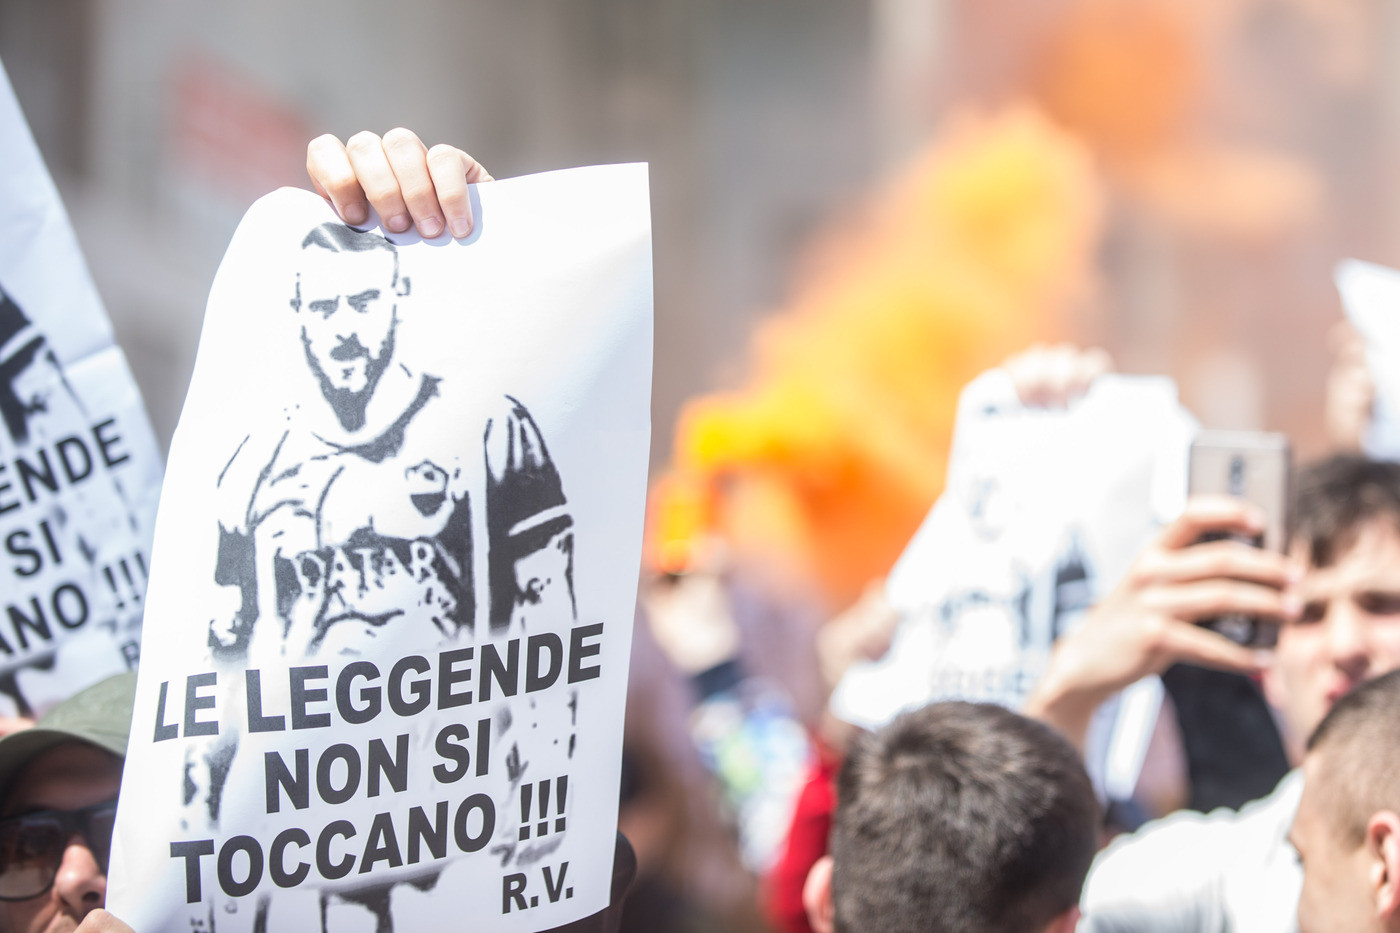 La Roma non rinnova De Rossi: la protesta dei tifosi